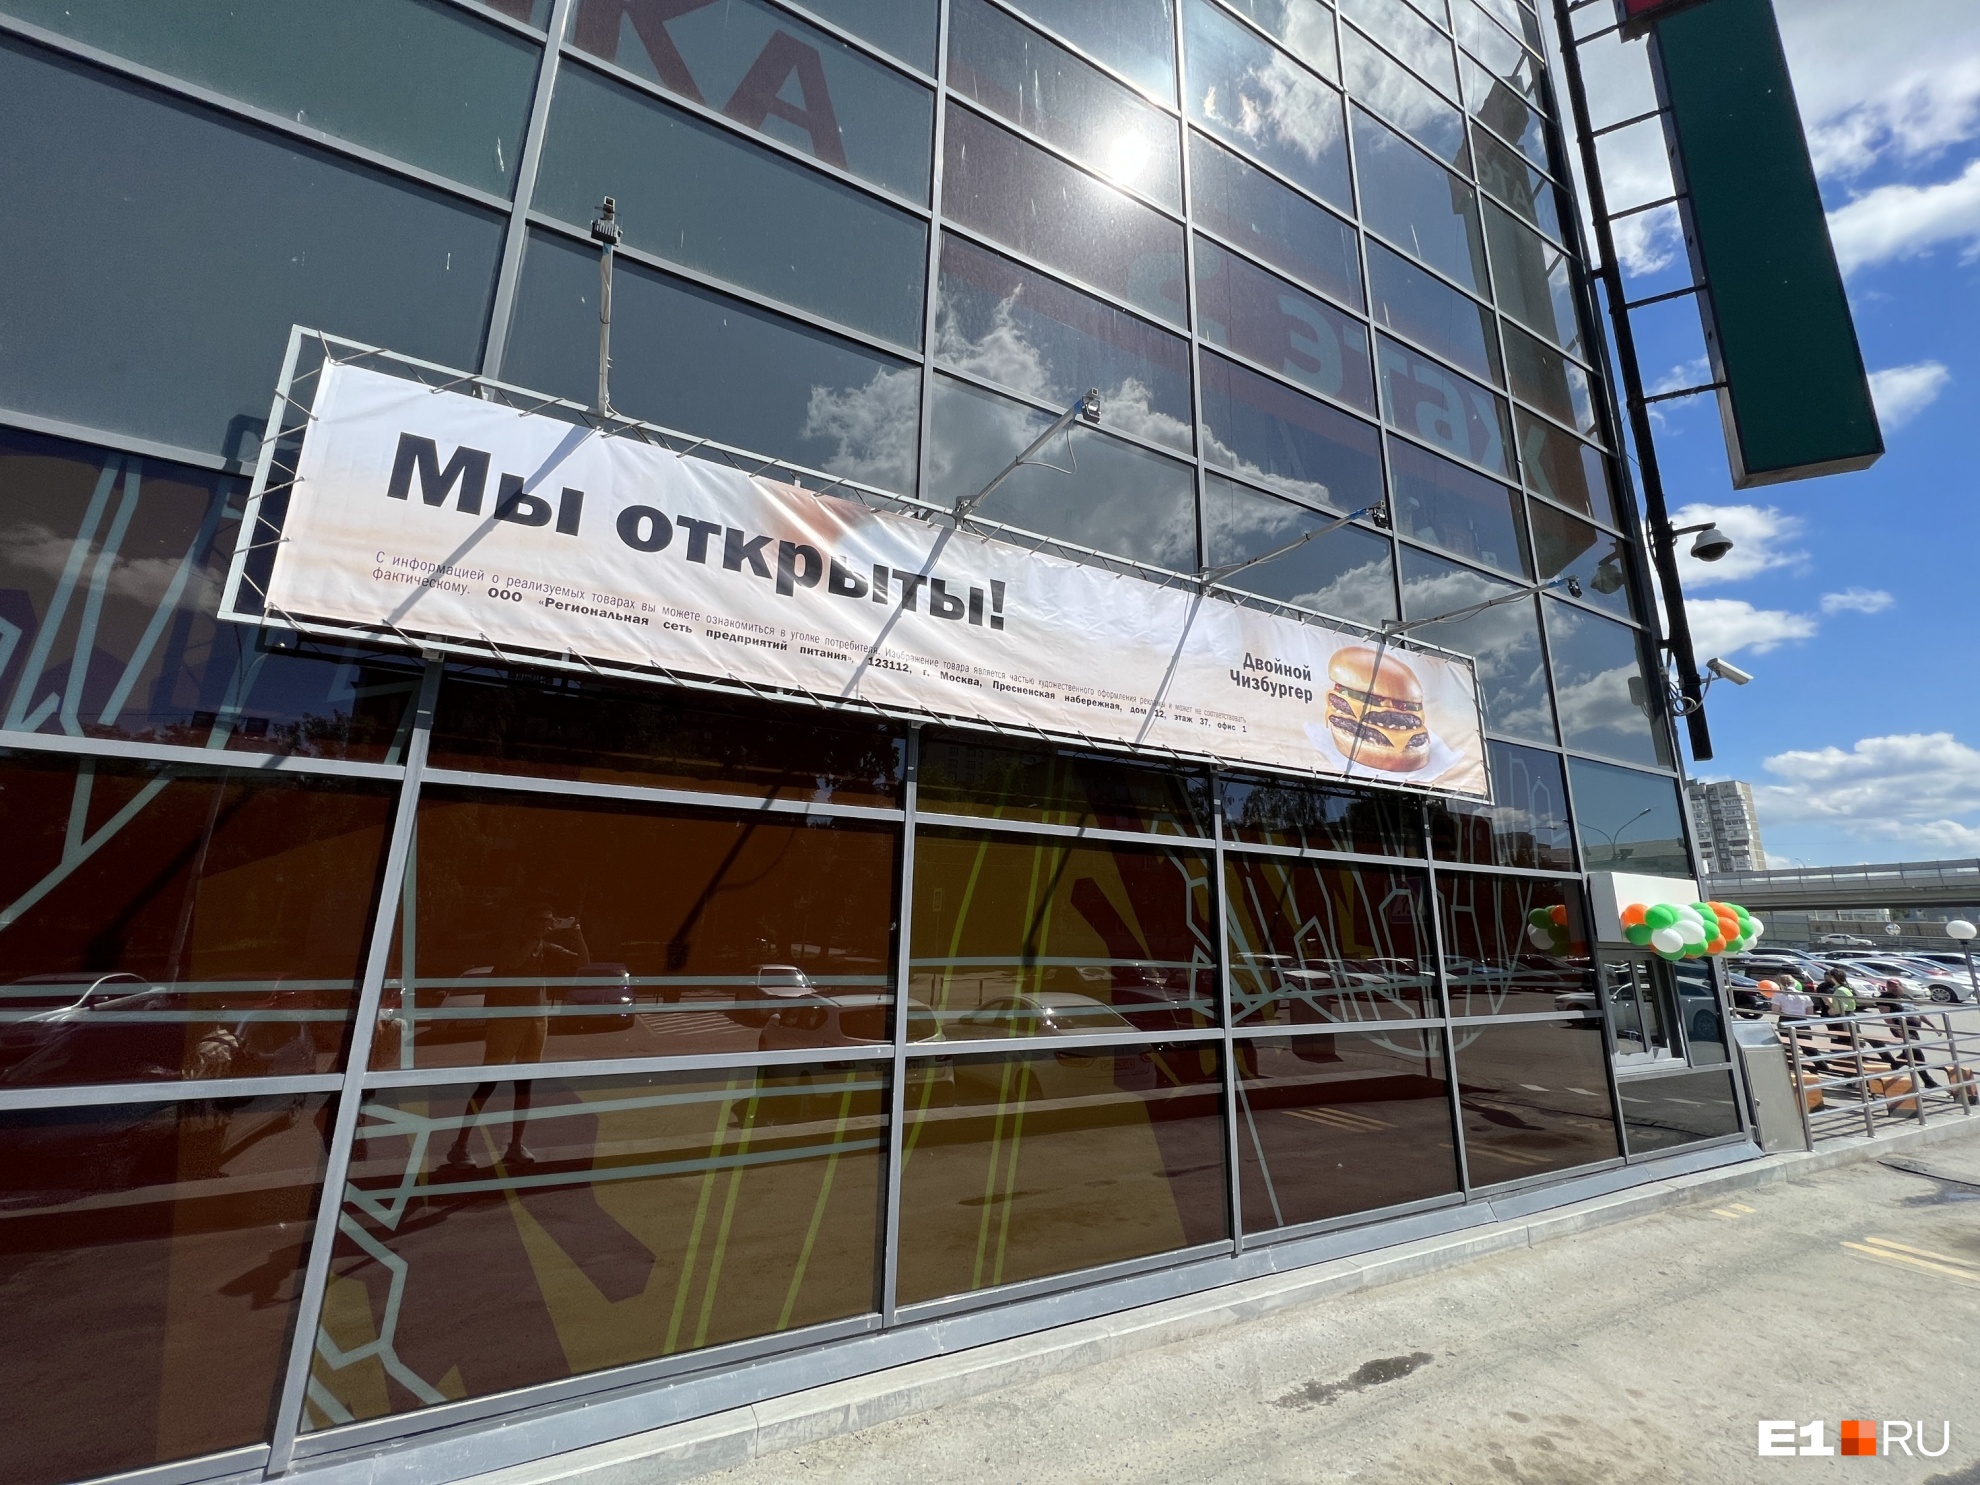 Почему в Екатеринбурге до сих пор большинство «Макдоналдсов» закрыты. Объясняем причину